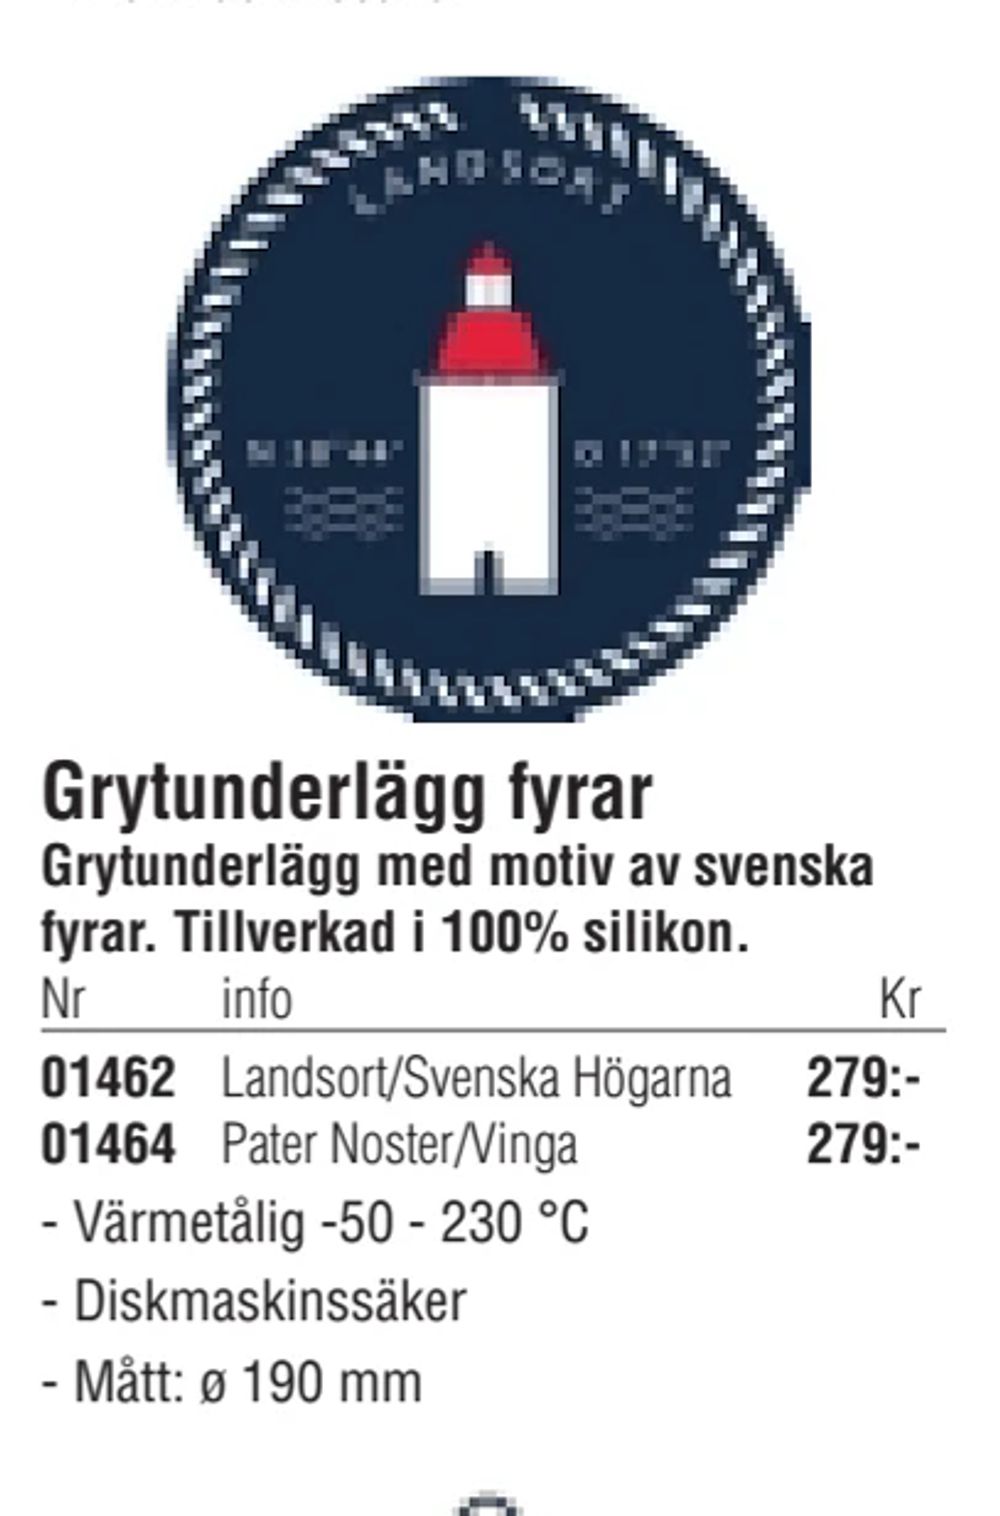 Erbjudanden på Grytunderlägg fyrar från Erlandsons Brygga för 279 kr